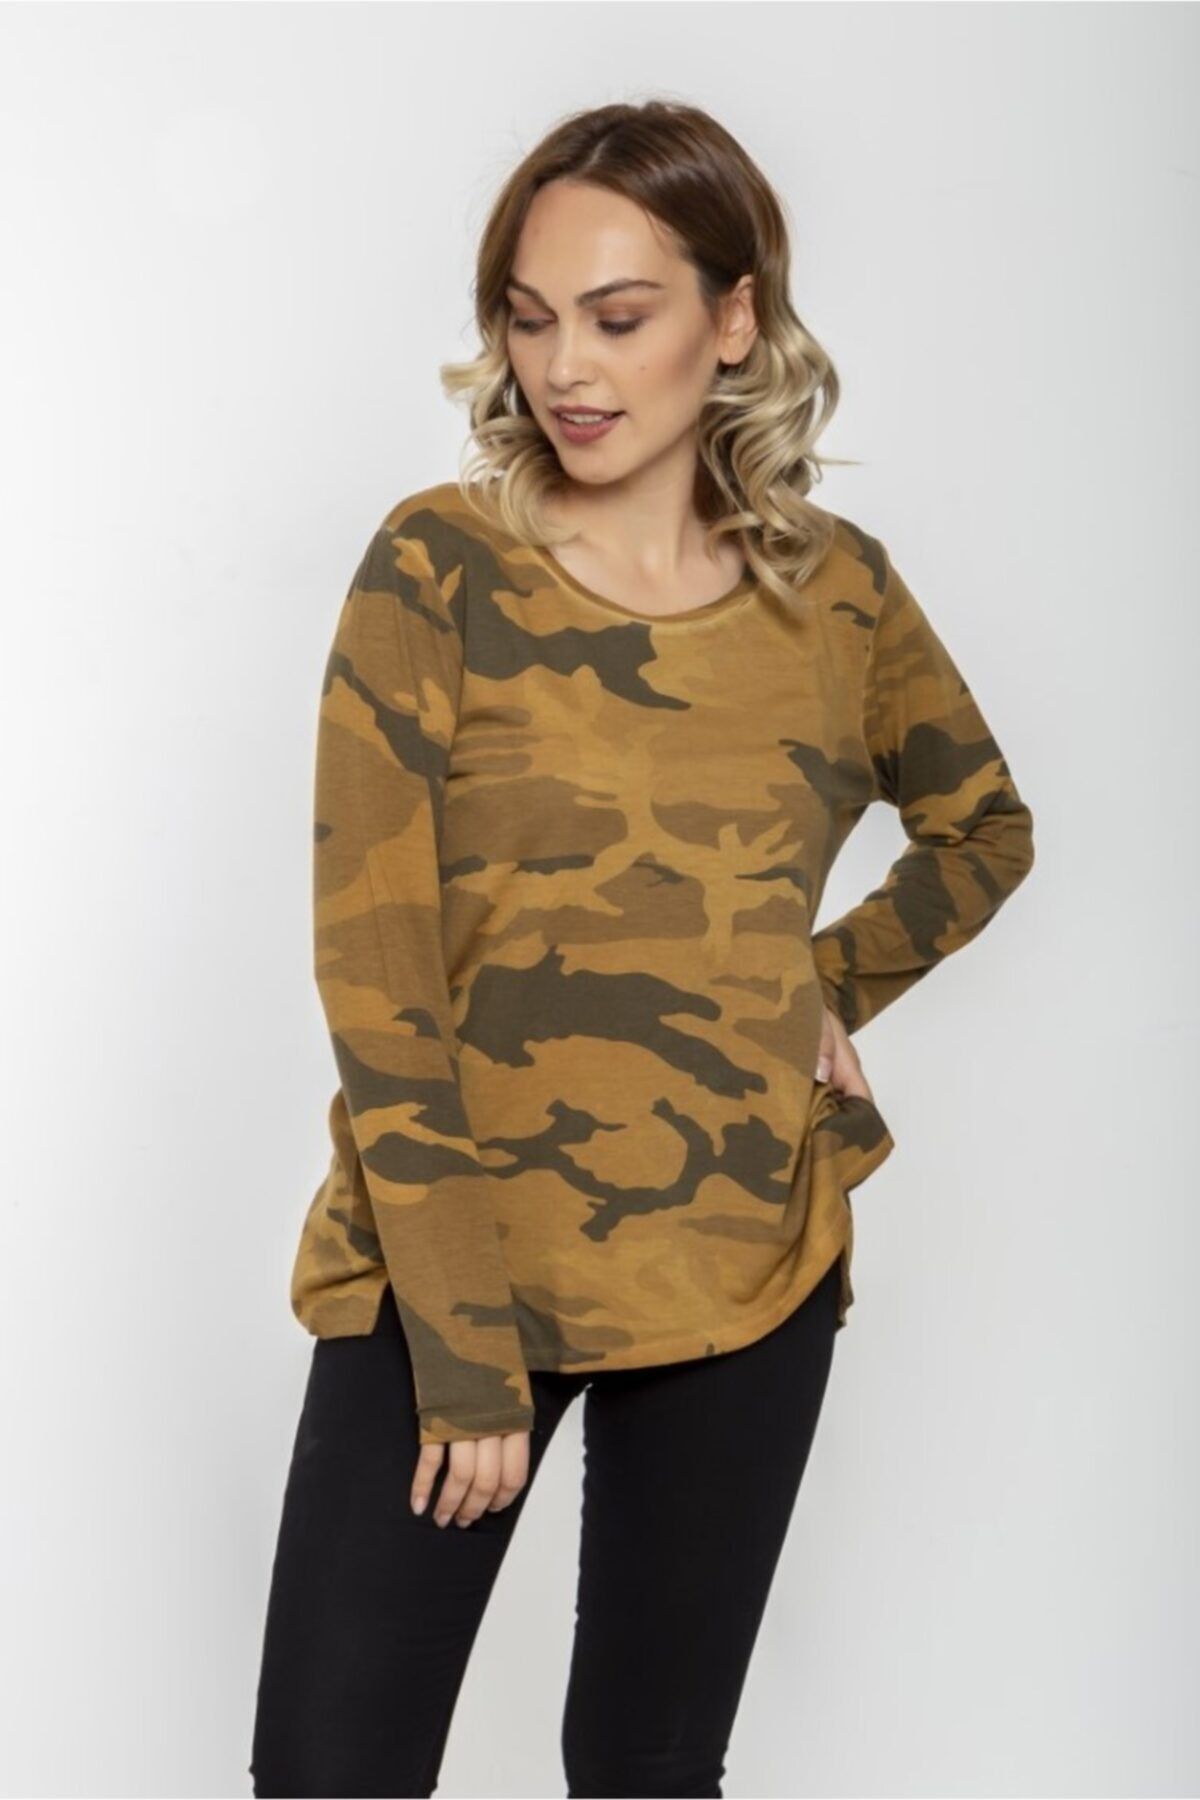 Seamoda Kadın Hardal Kamuflaj Desen Yağ Yıkama Yırtmaçlı Sweatshirt